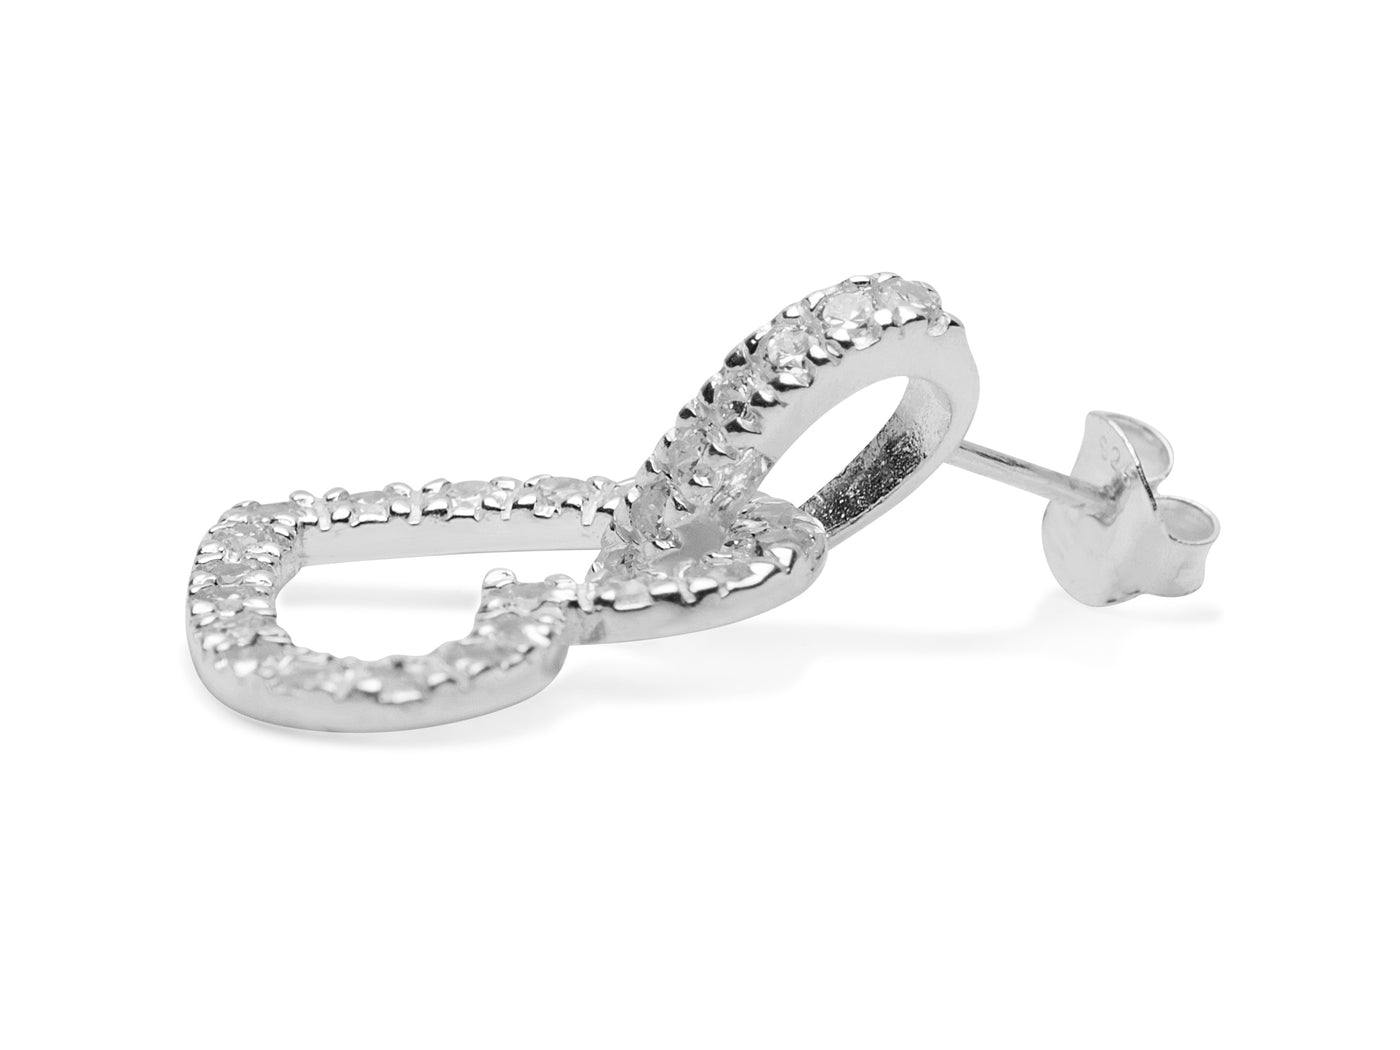 Swarovski Crystal Heart Earrings in Sterling Silver | SilverAndGold